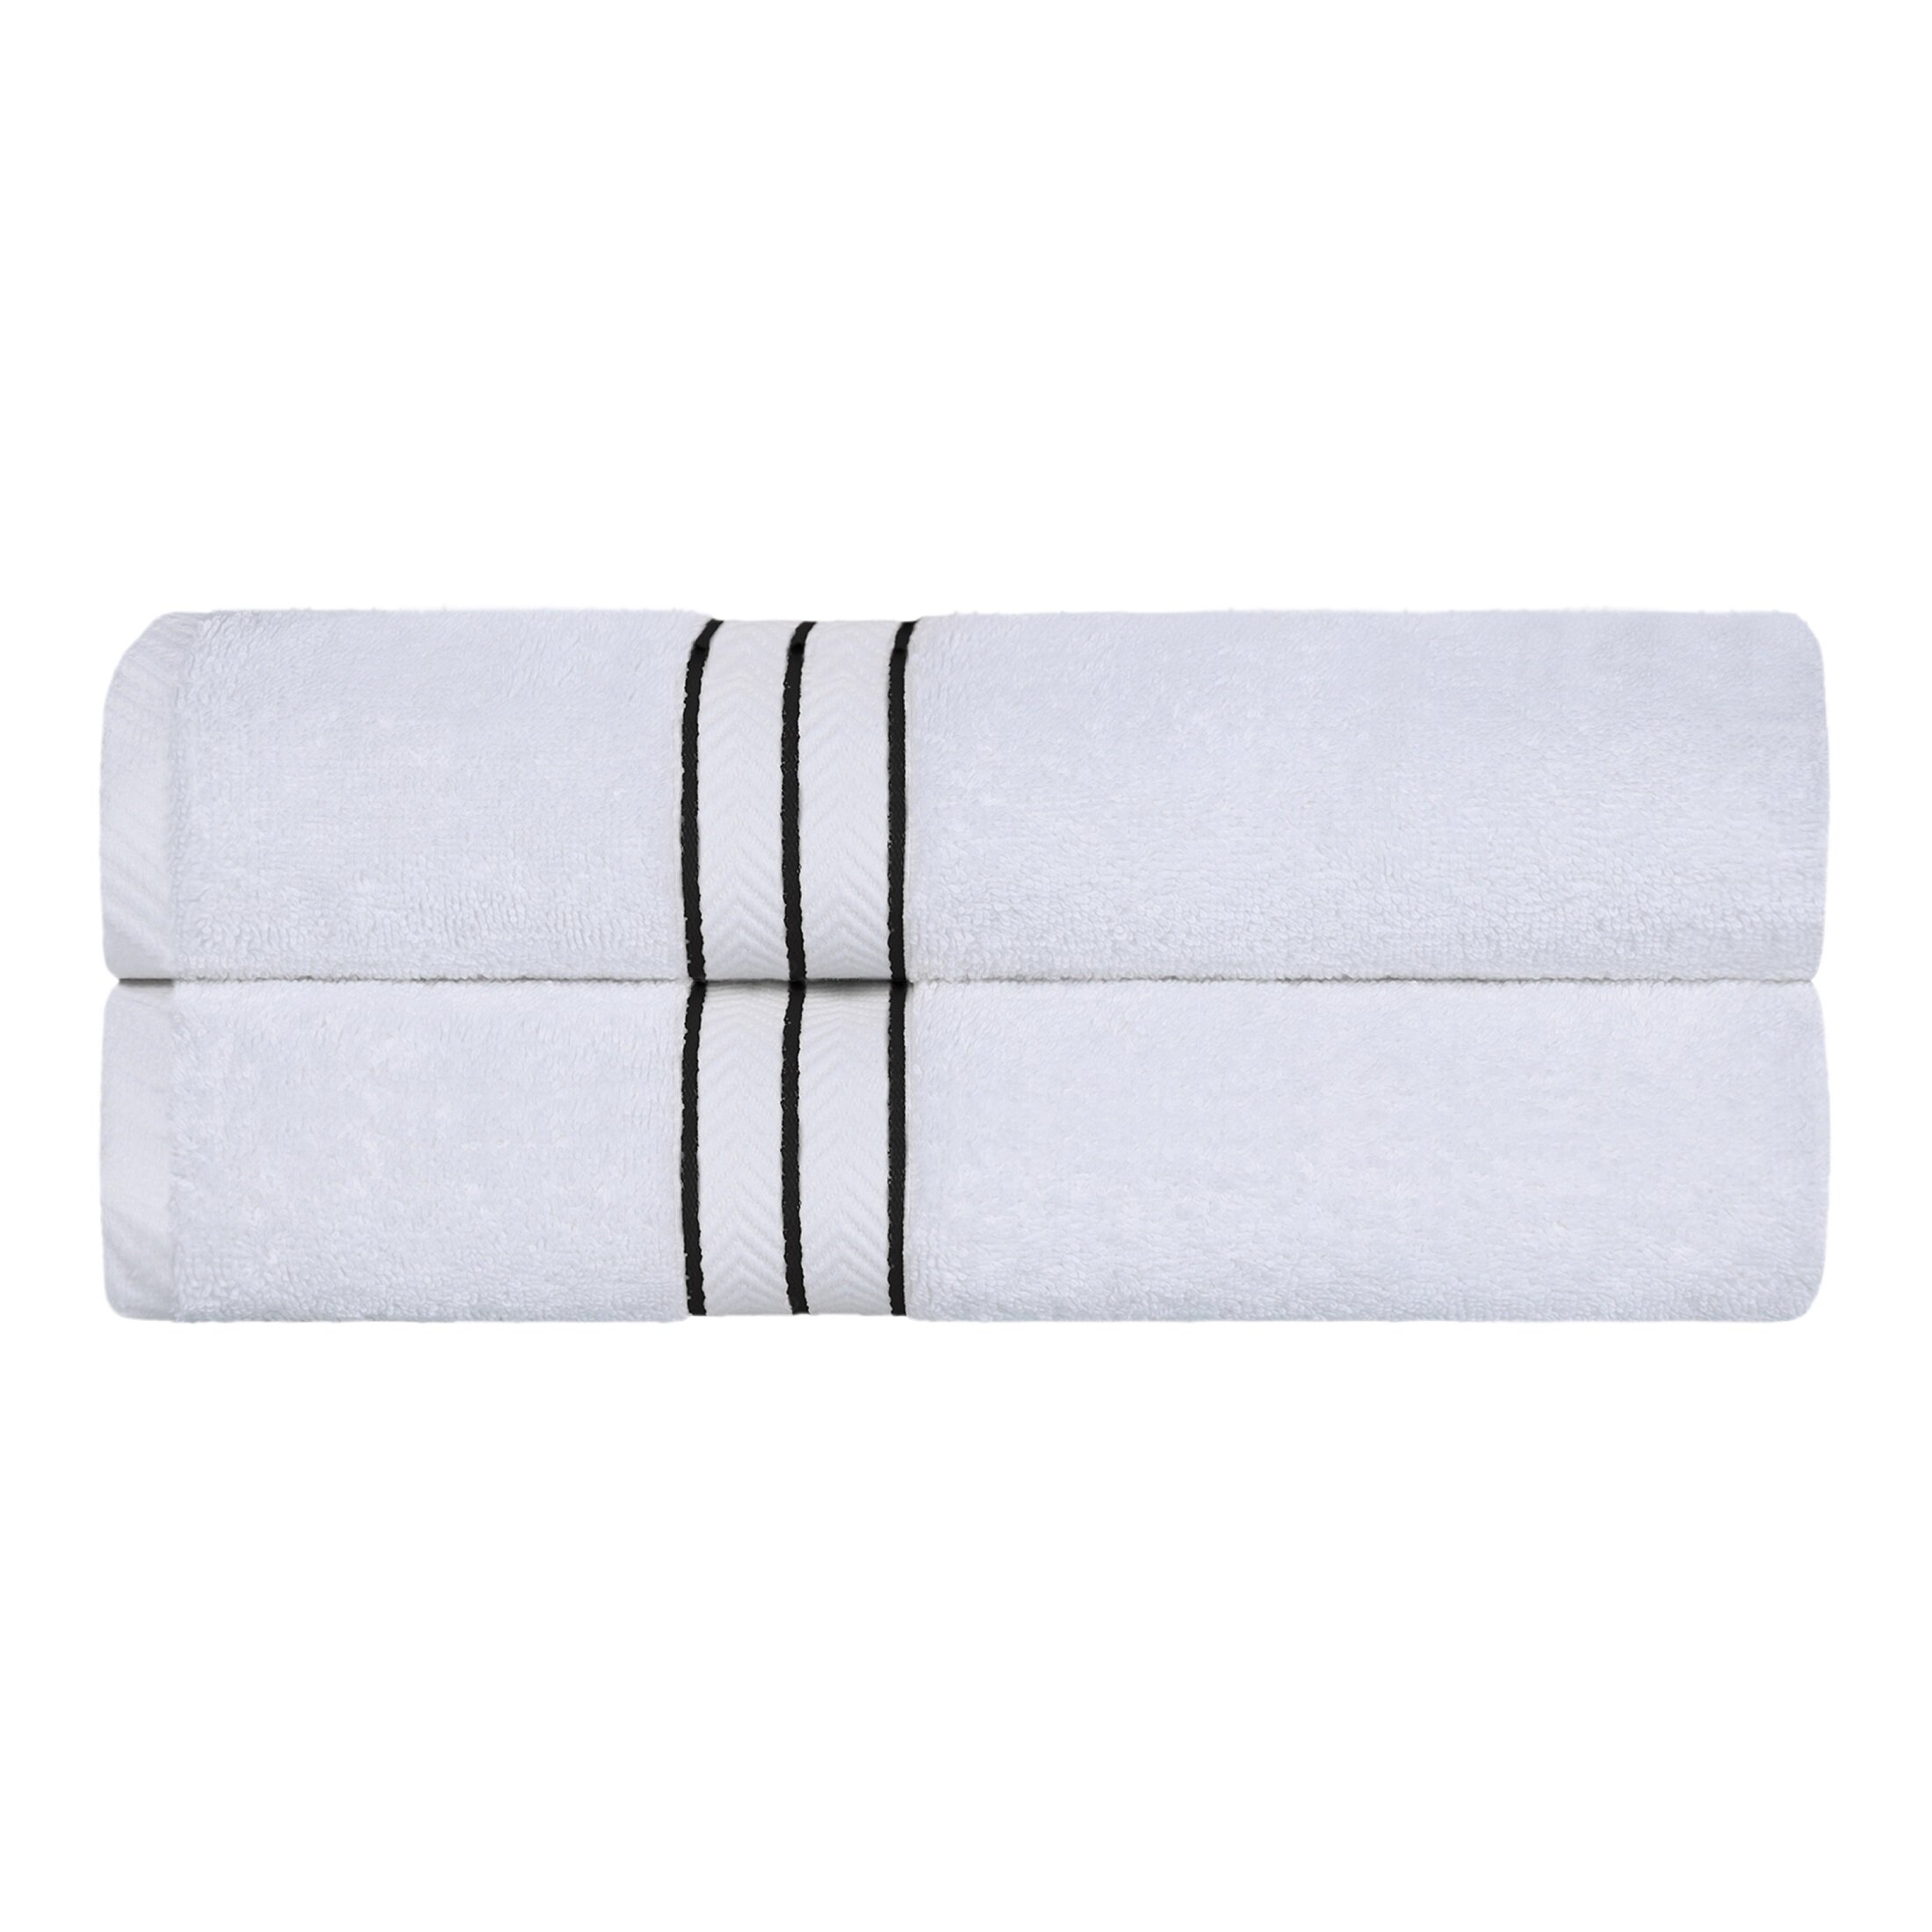 https://assets.wfcdn.com/im/33260905/compr-r85/1872/187237087/josann-highly-absorbent-800-gsm-turkish-cotton-bath-towels.jpg